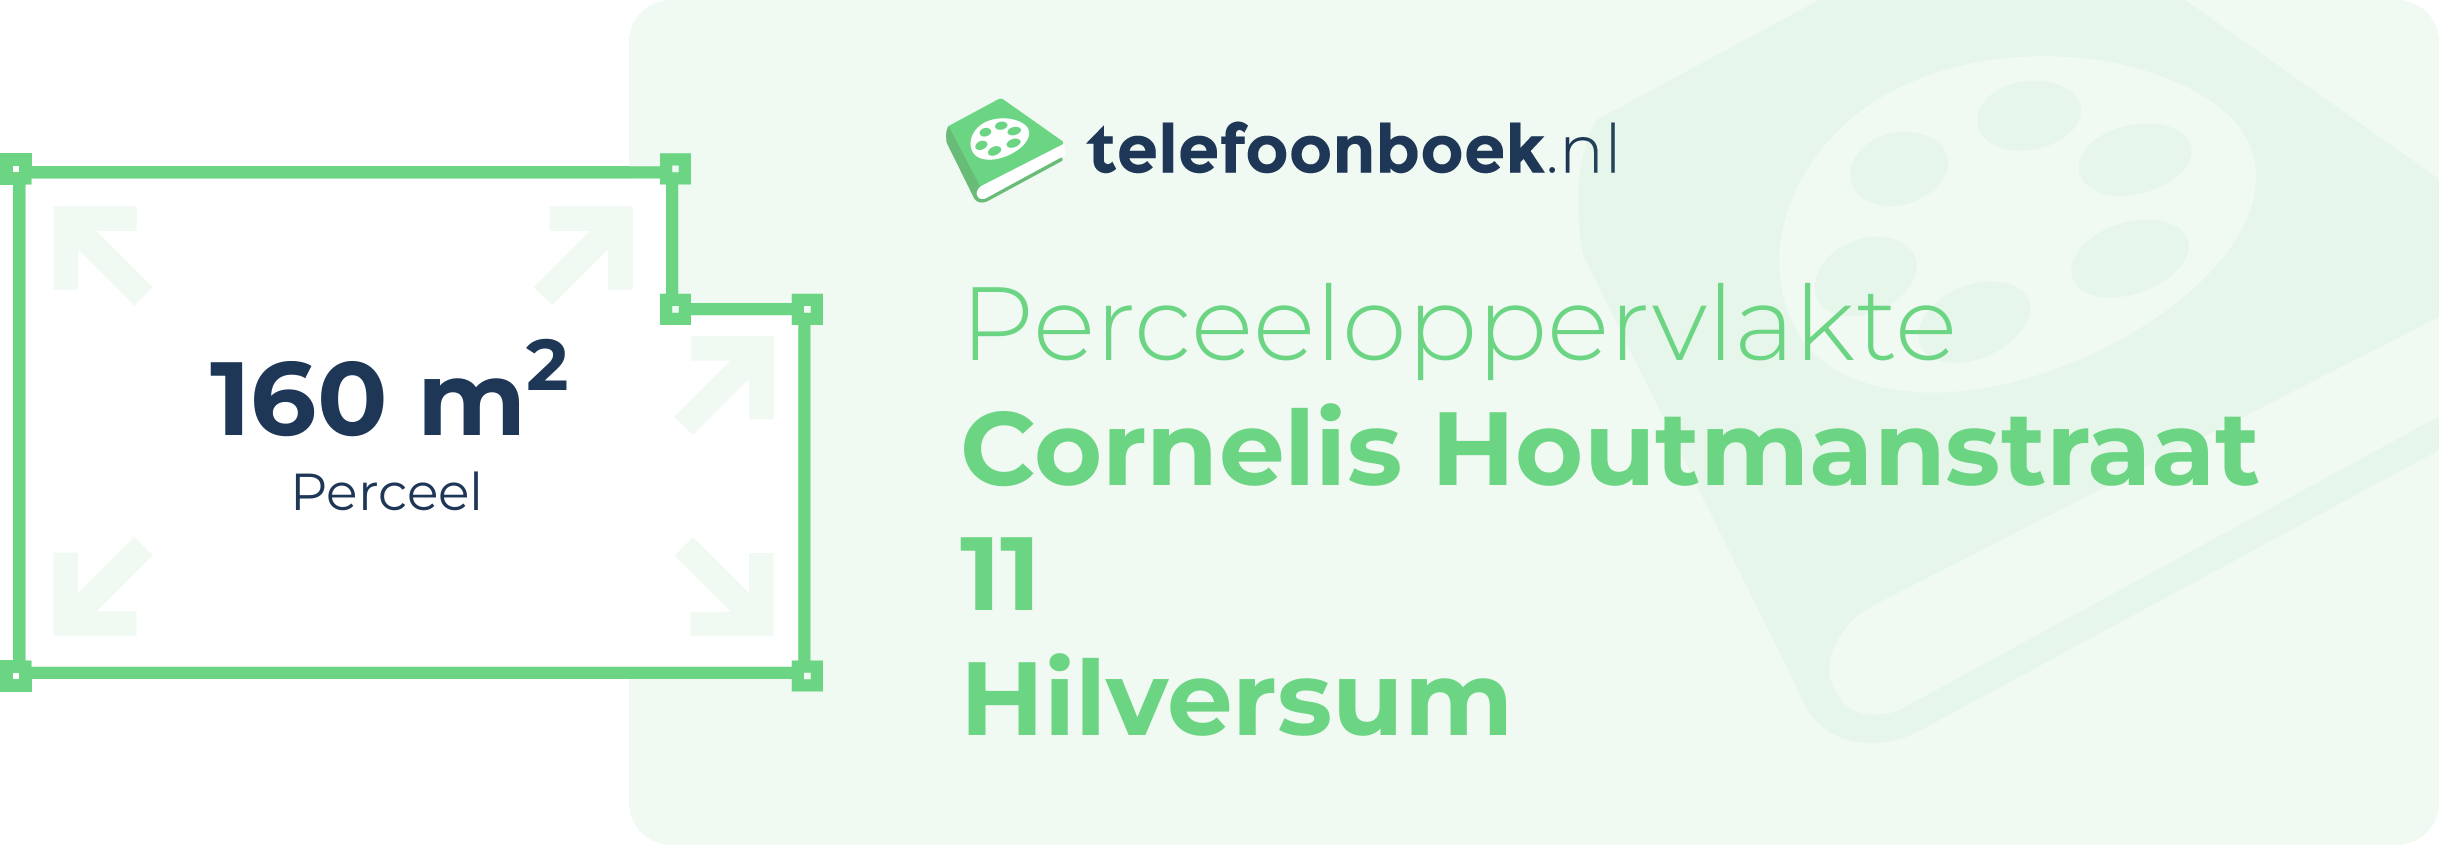 Perceeloppervlakte Cornelis Houtmanstraat 11 Hilversum